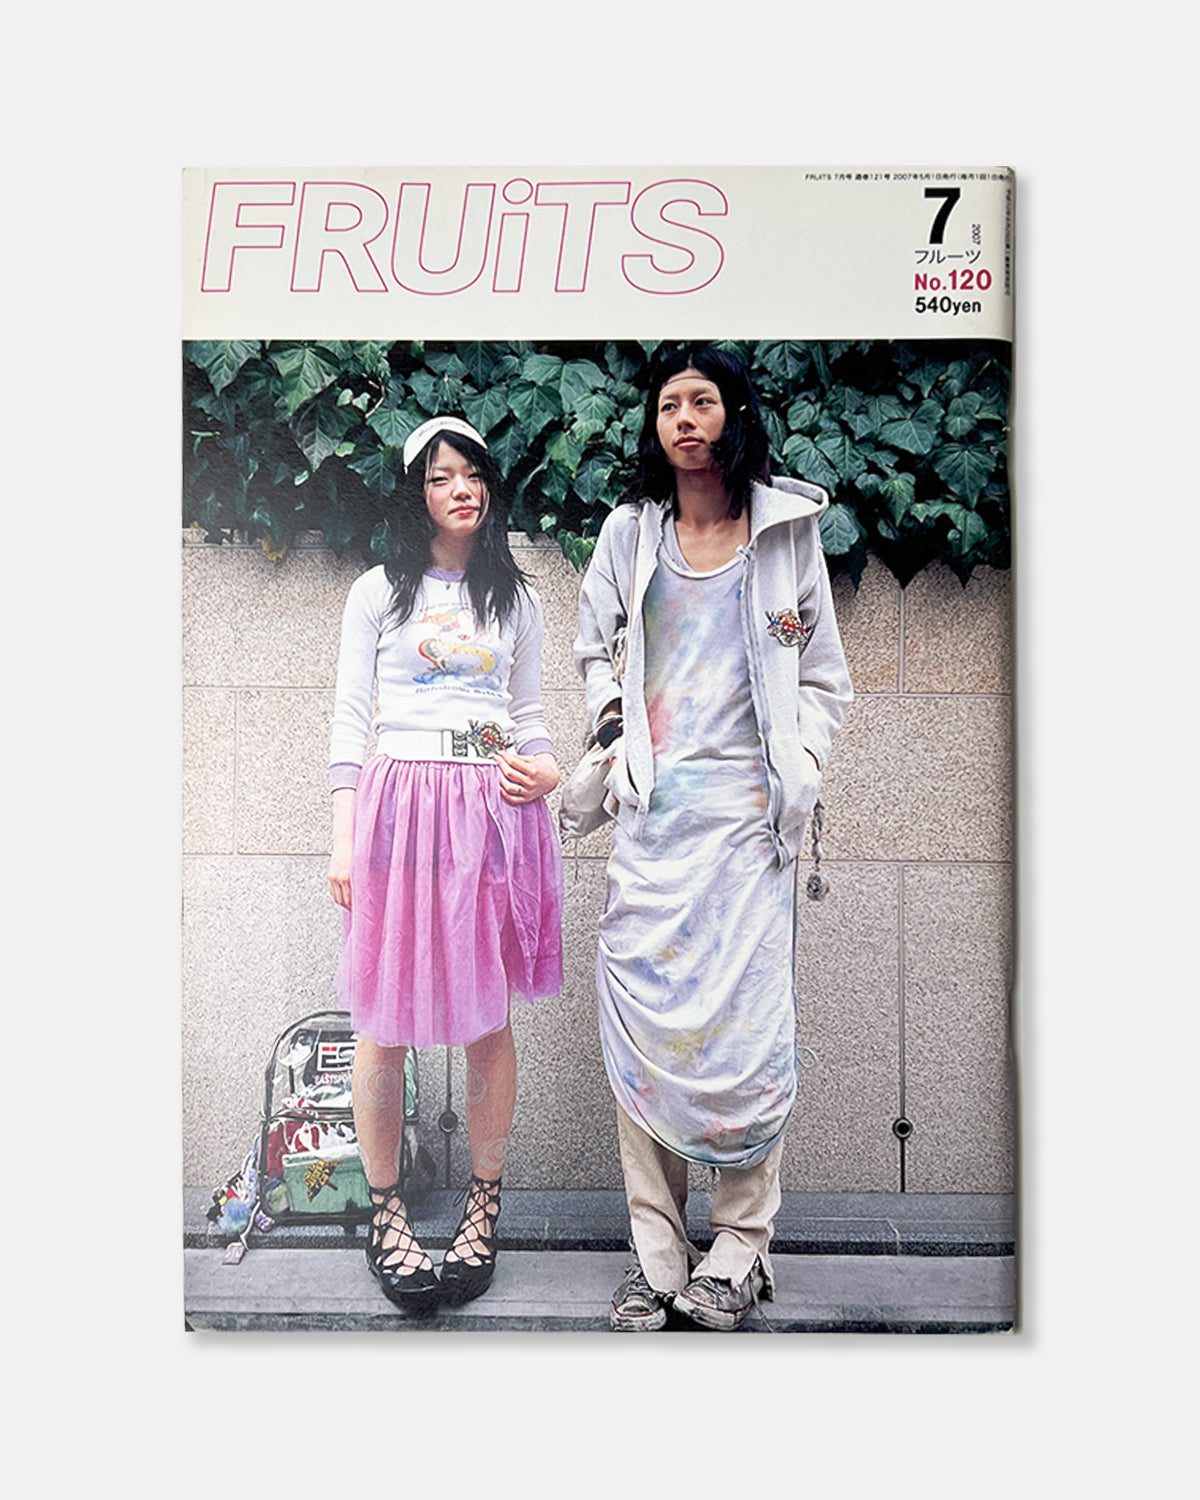 Fruits Magazine July 2007 (#120)